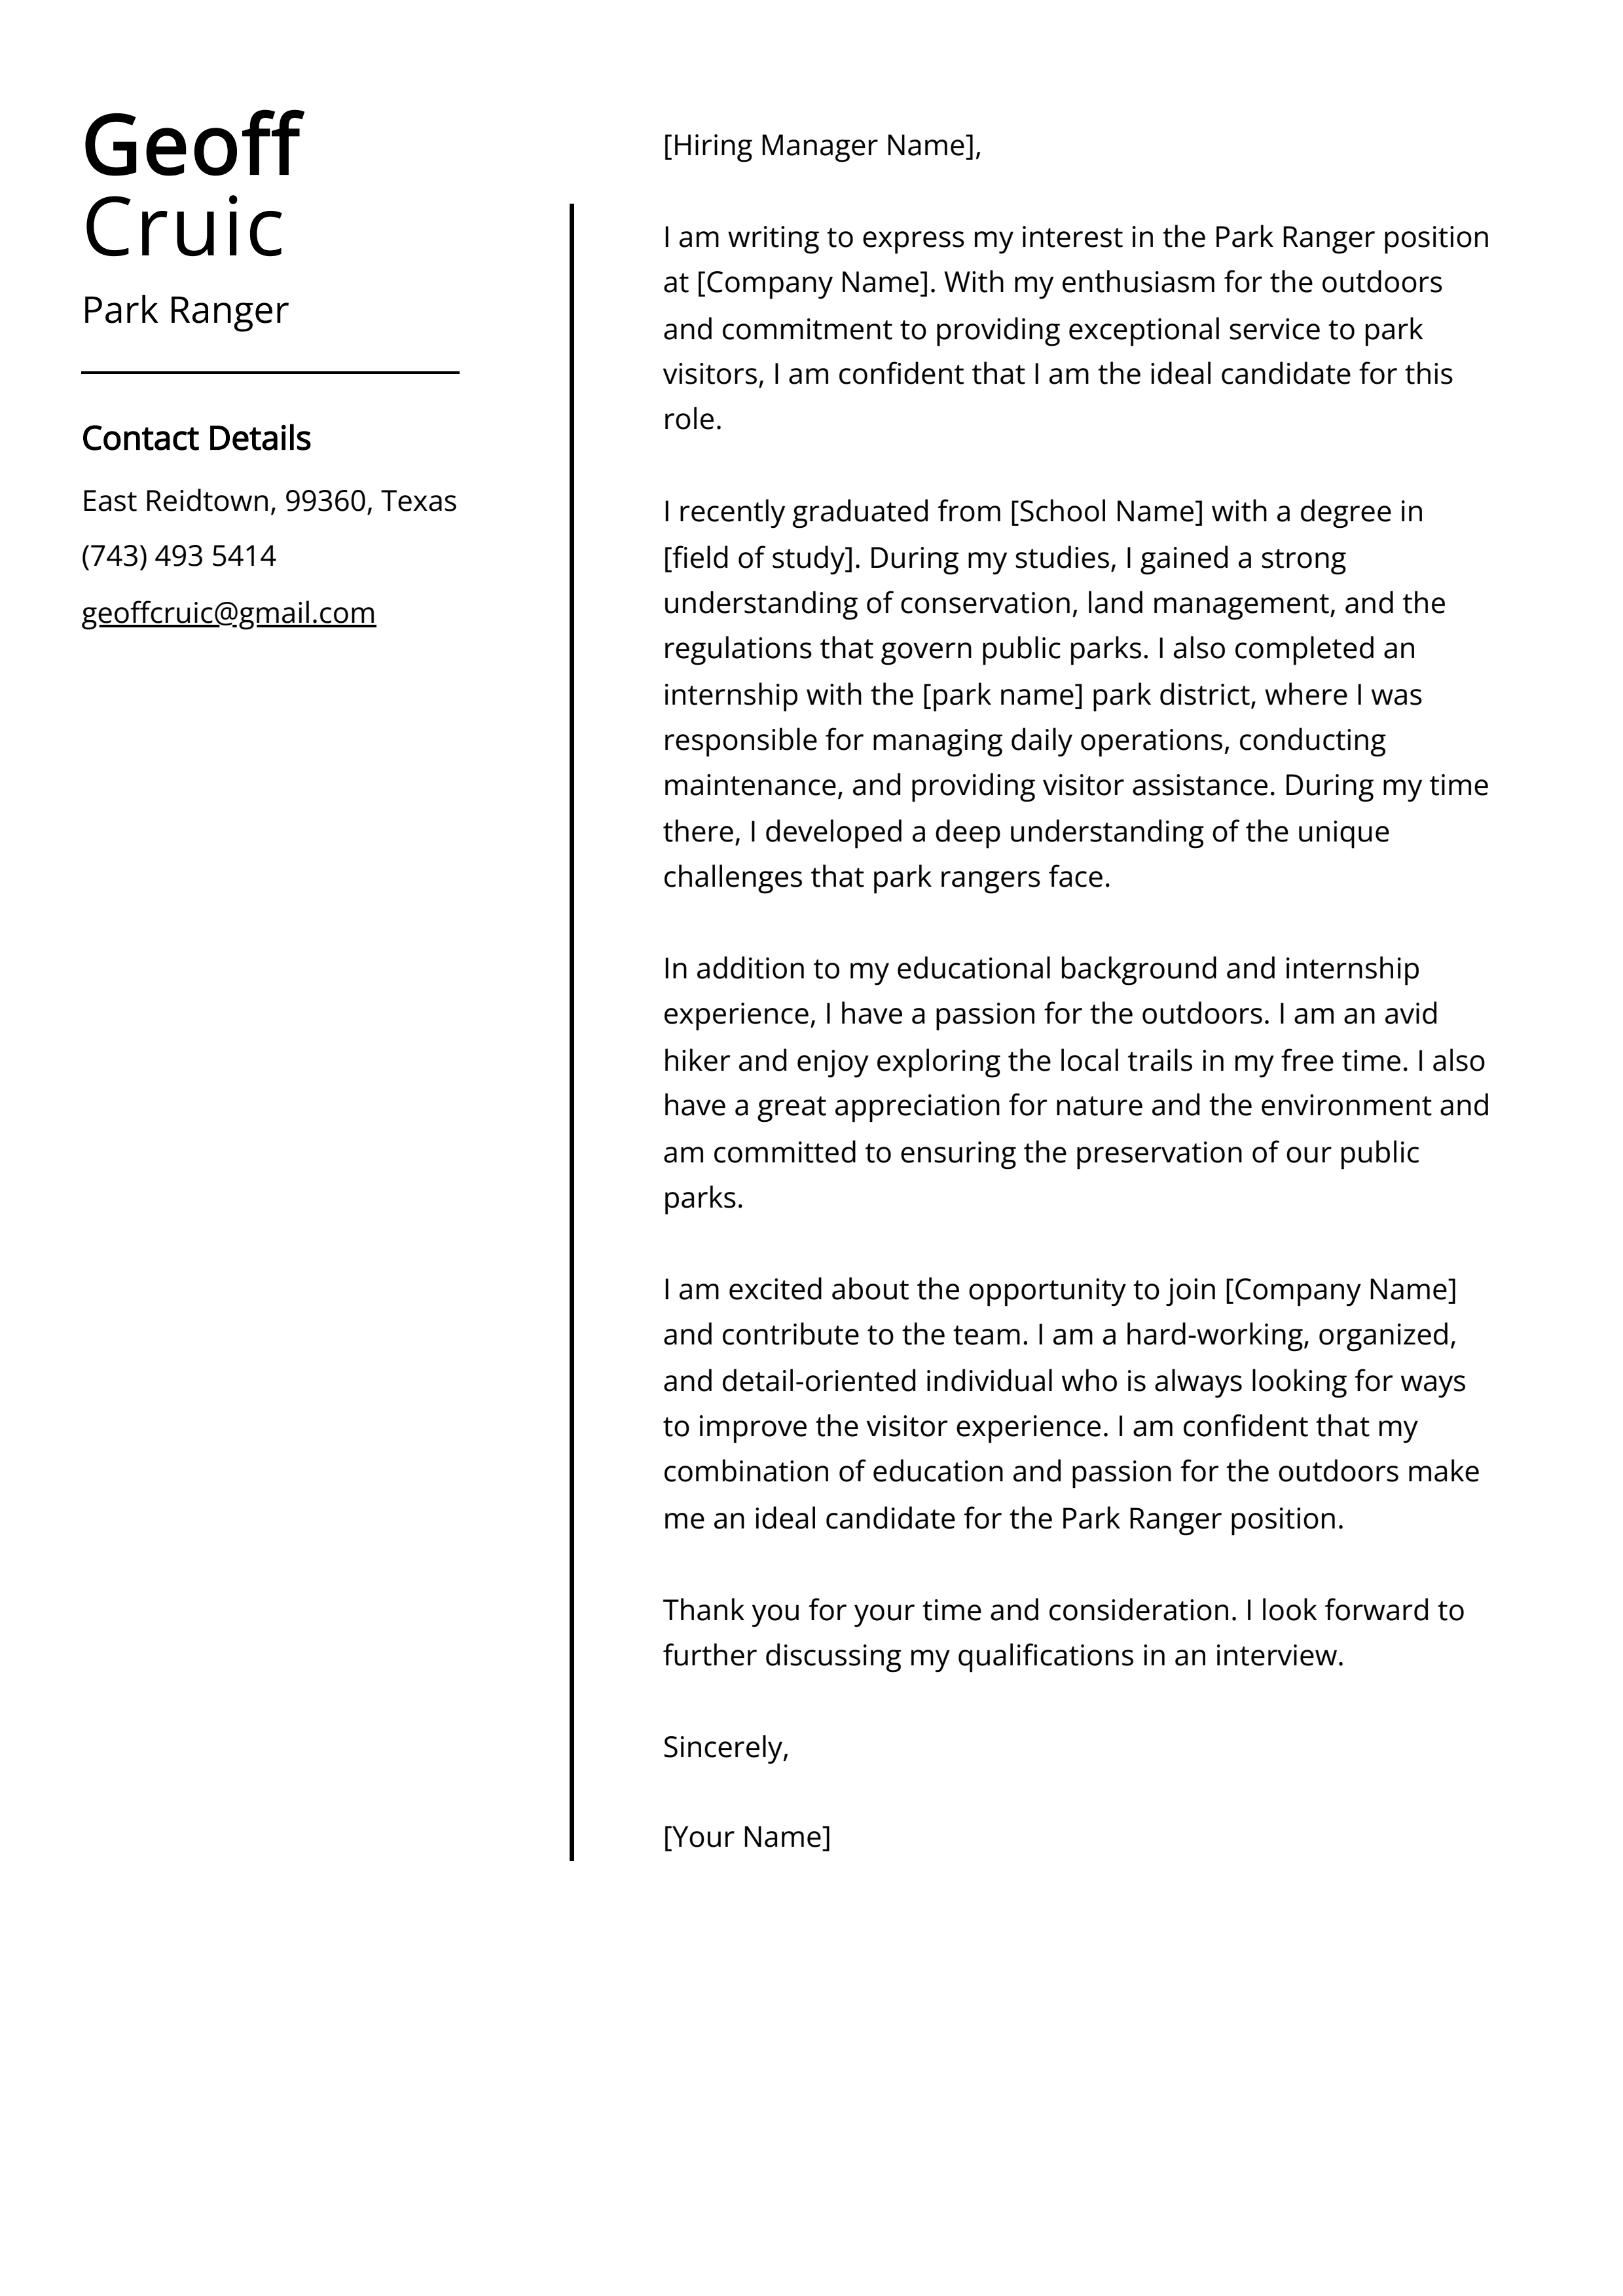 Park Ranger Cover Letter Example